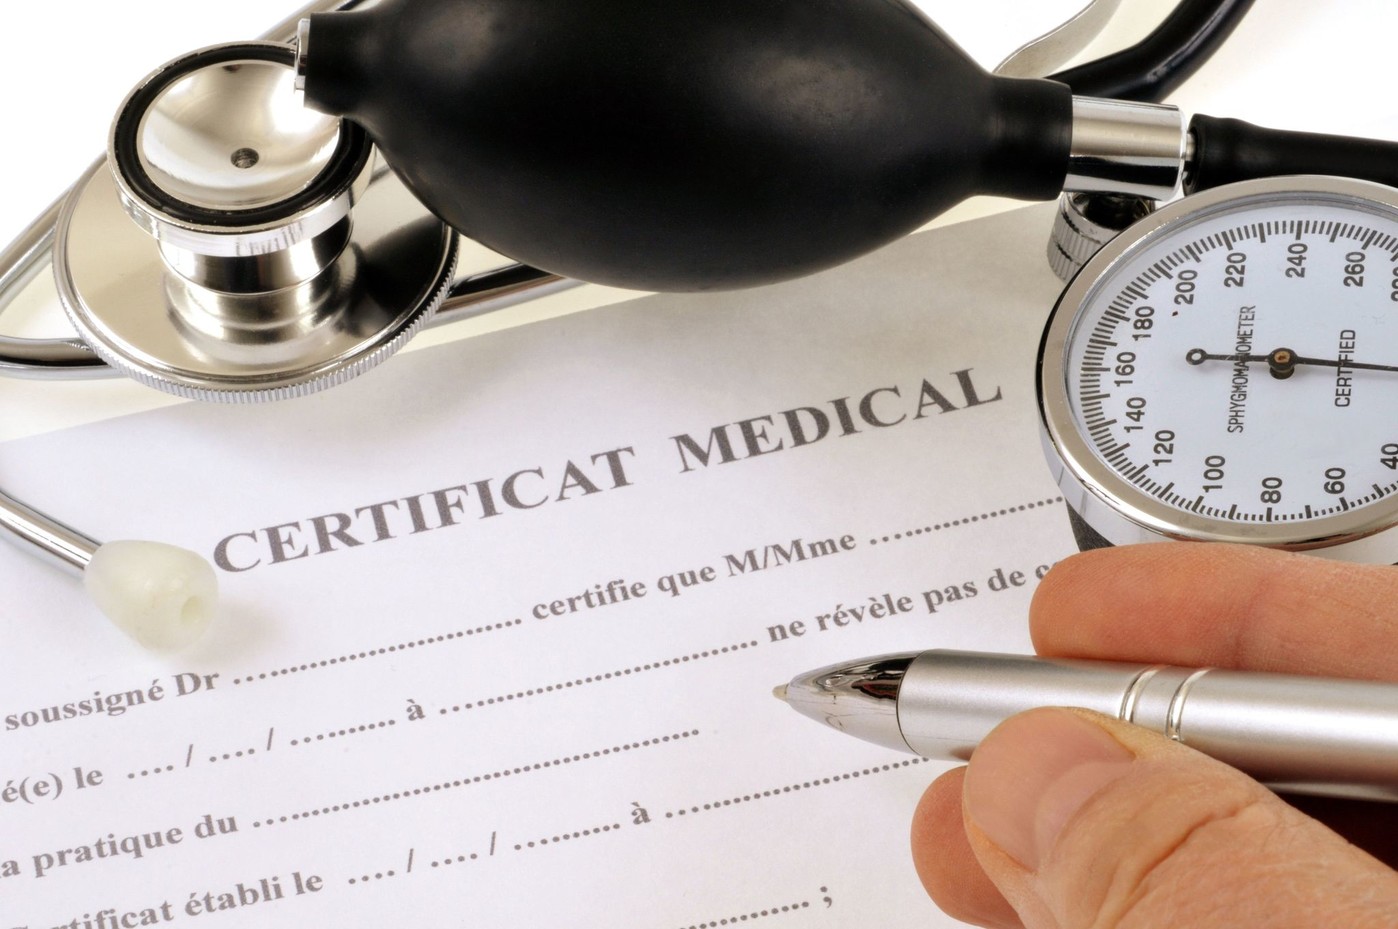 La-delivrance-certificats-medicaux-etrangers-remise-question_0_1400_929